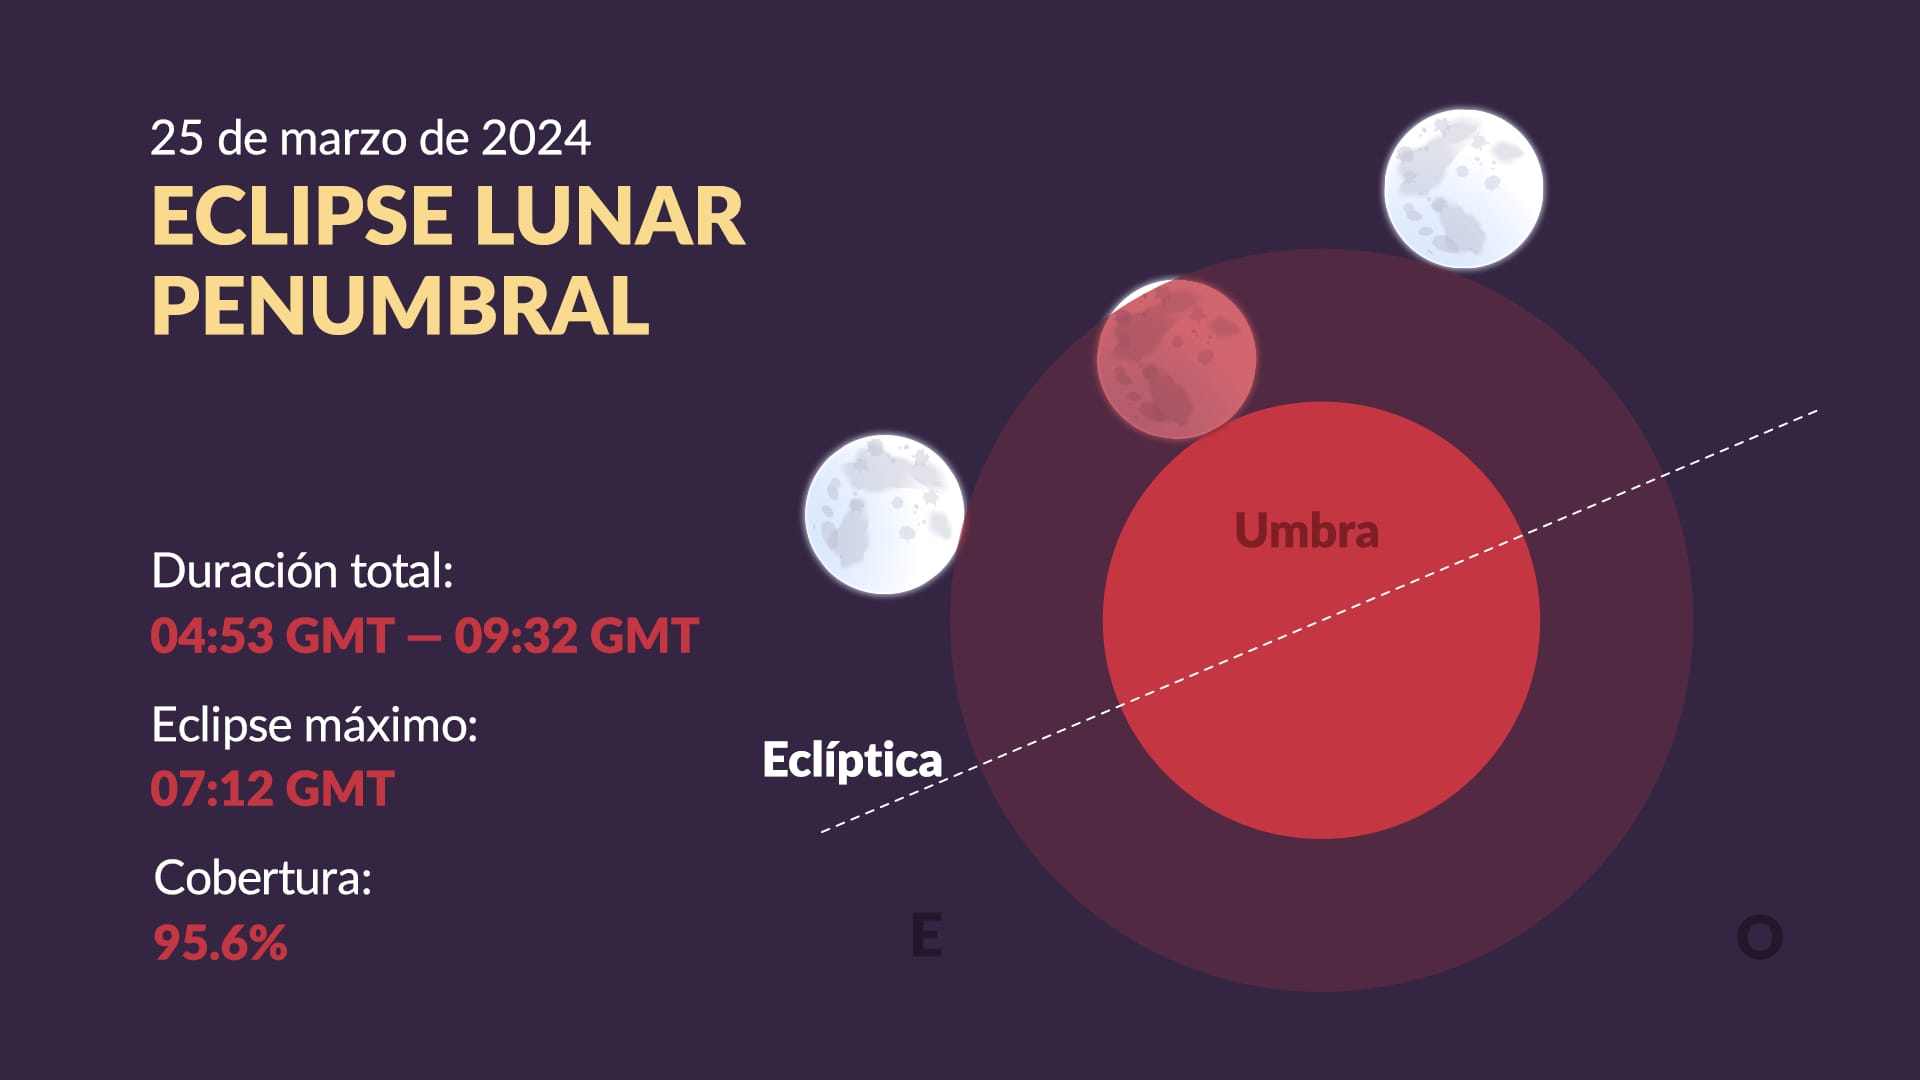 Lunar eclipse on March 2024: Timeline